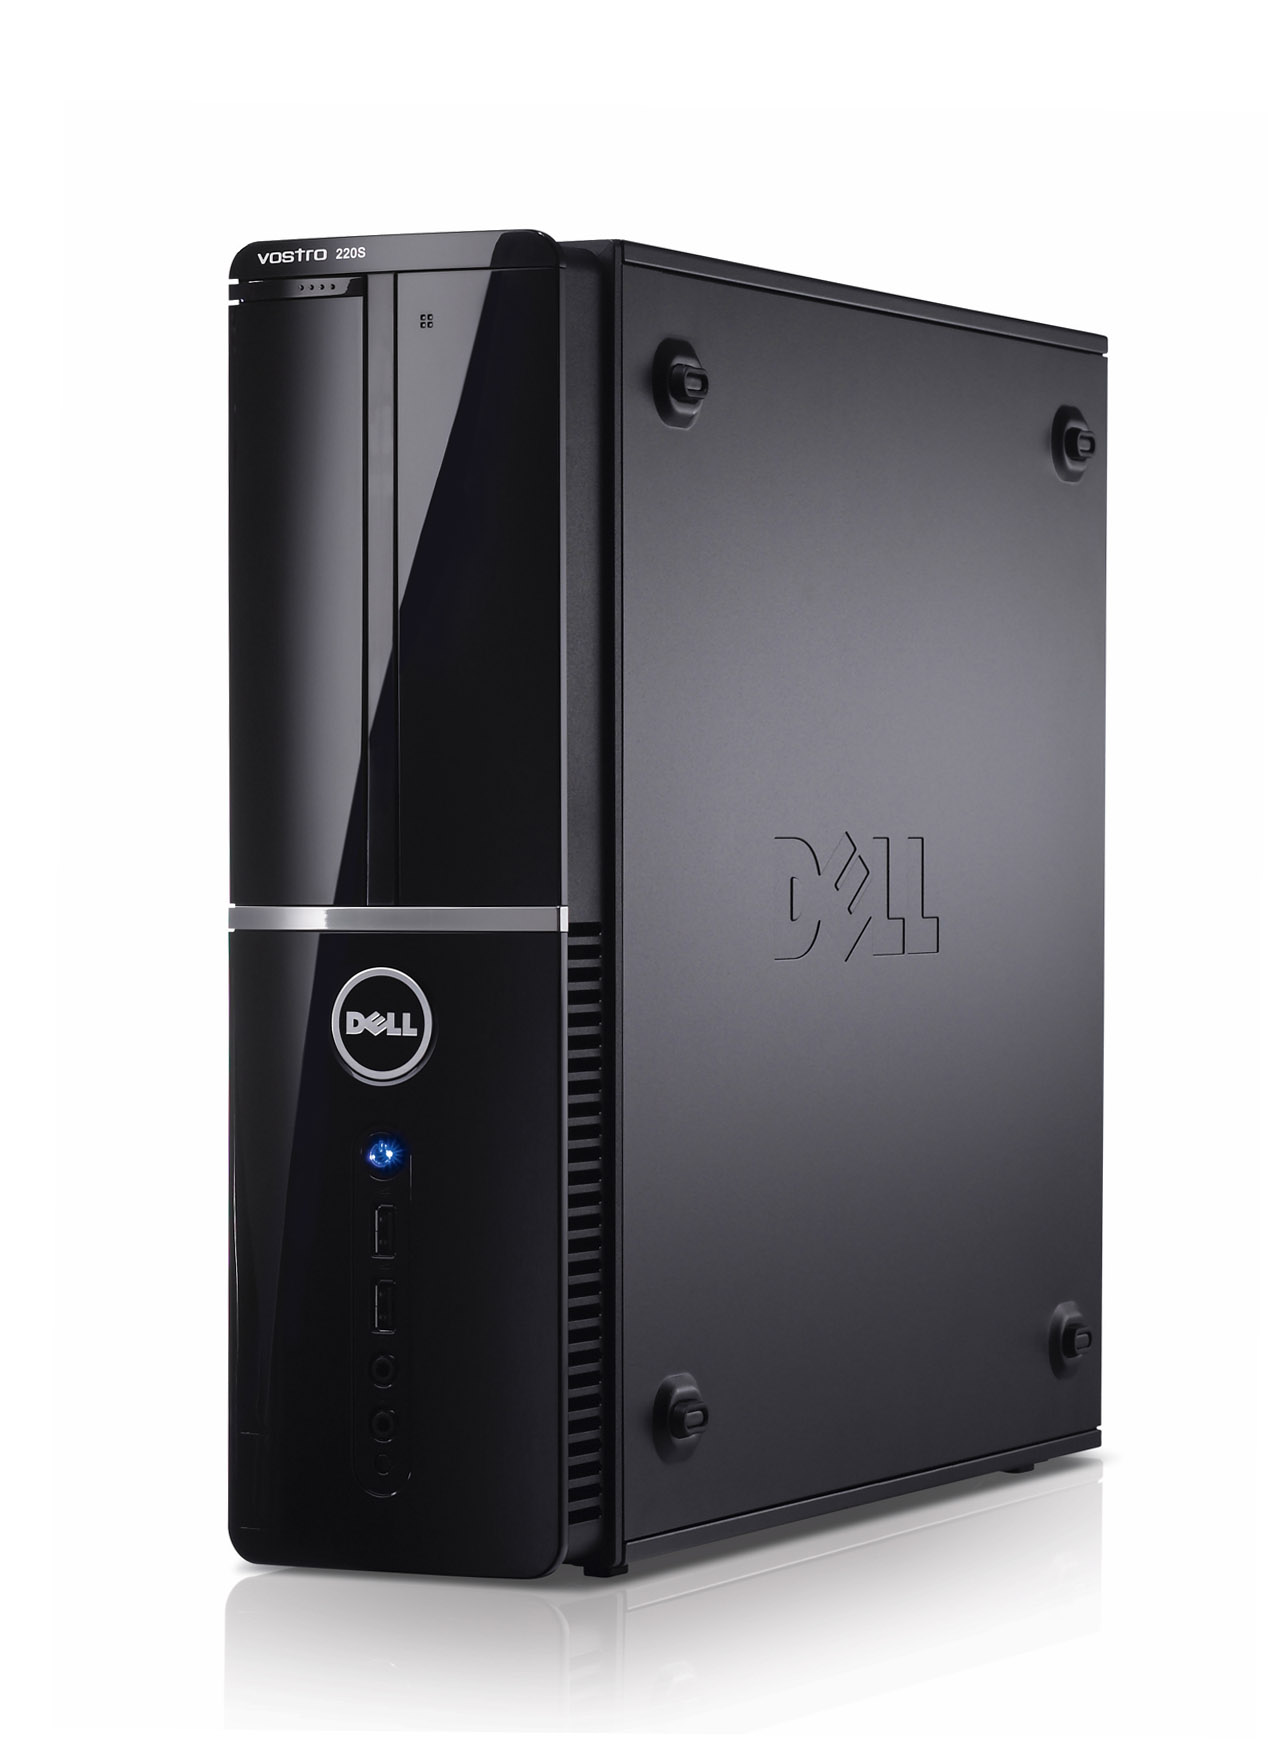 Dell Vostro 220S – Compact si puternic!